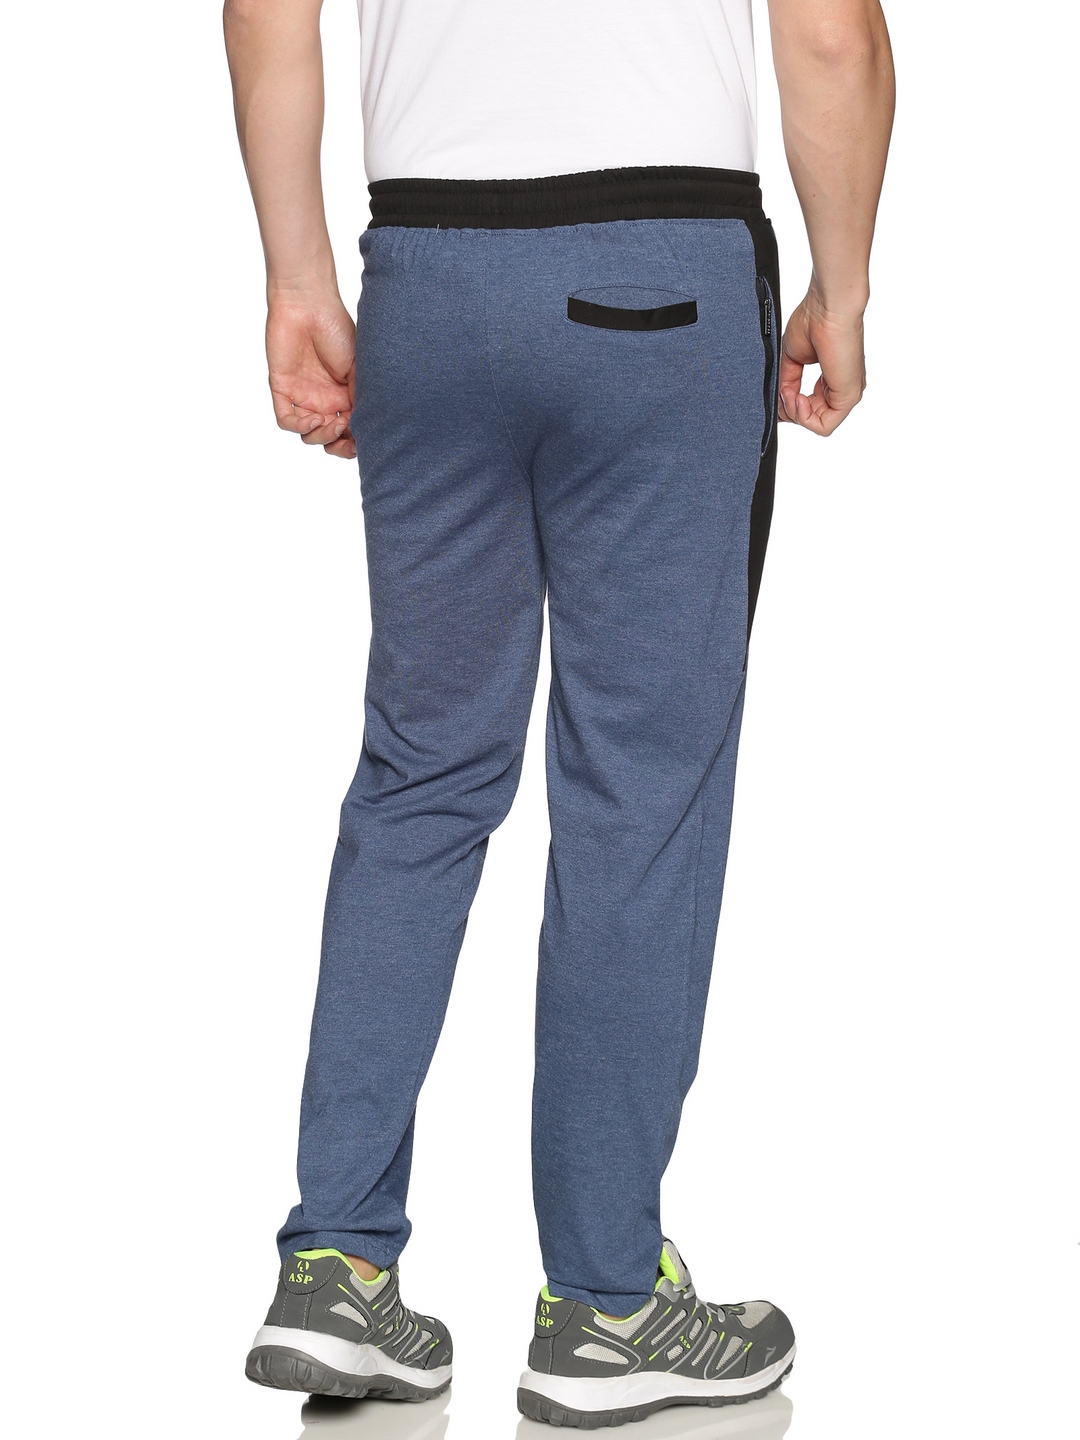 Foxter Solid Men Blue, Black Track Pants - Buy Foxter Solid Men Blue, Black Track  Pants Online at Best Prices in India | Flipkart.com